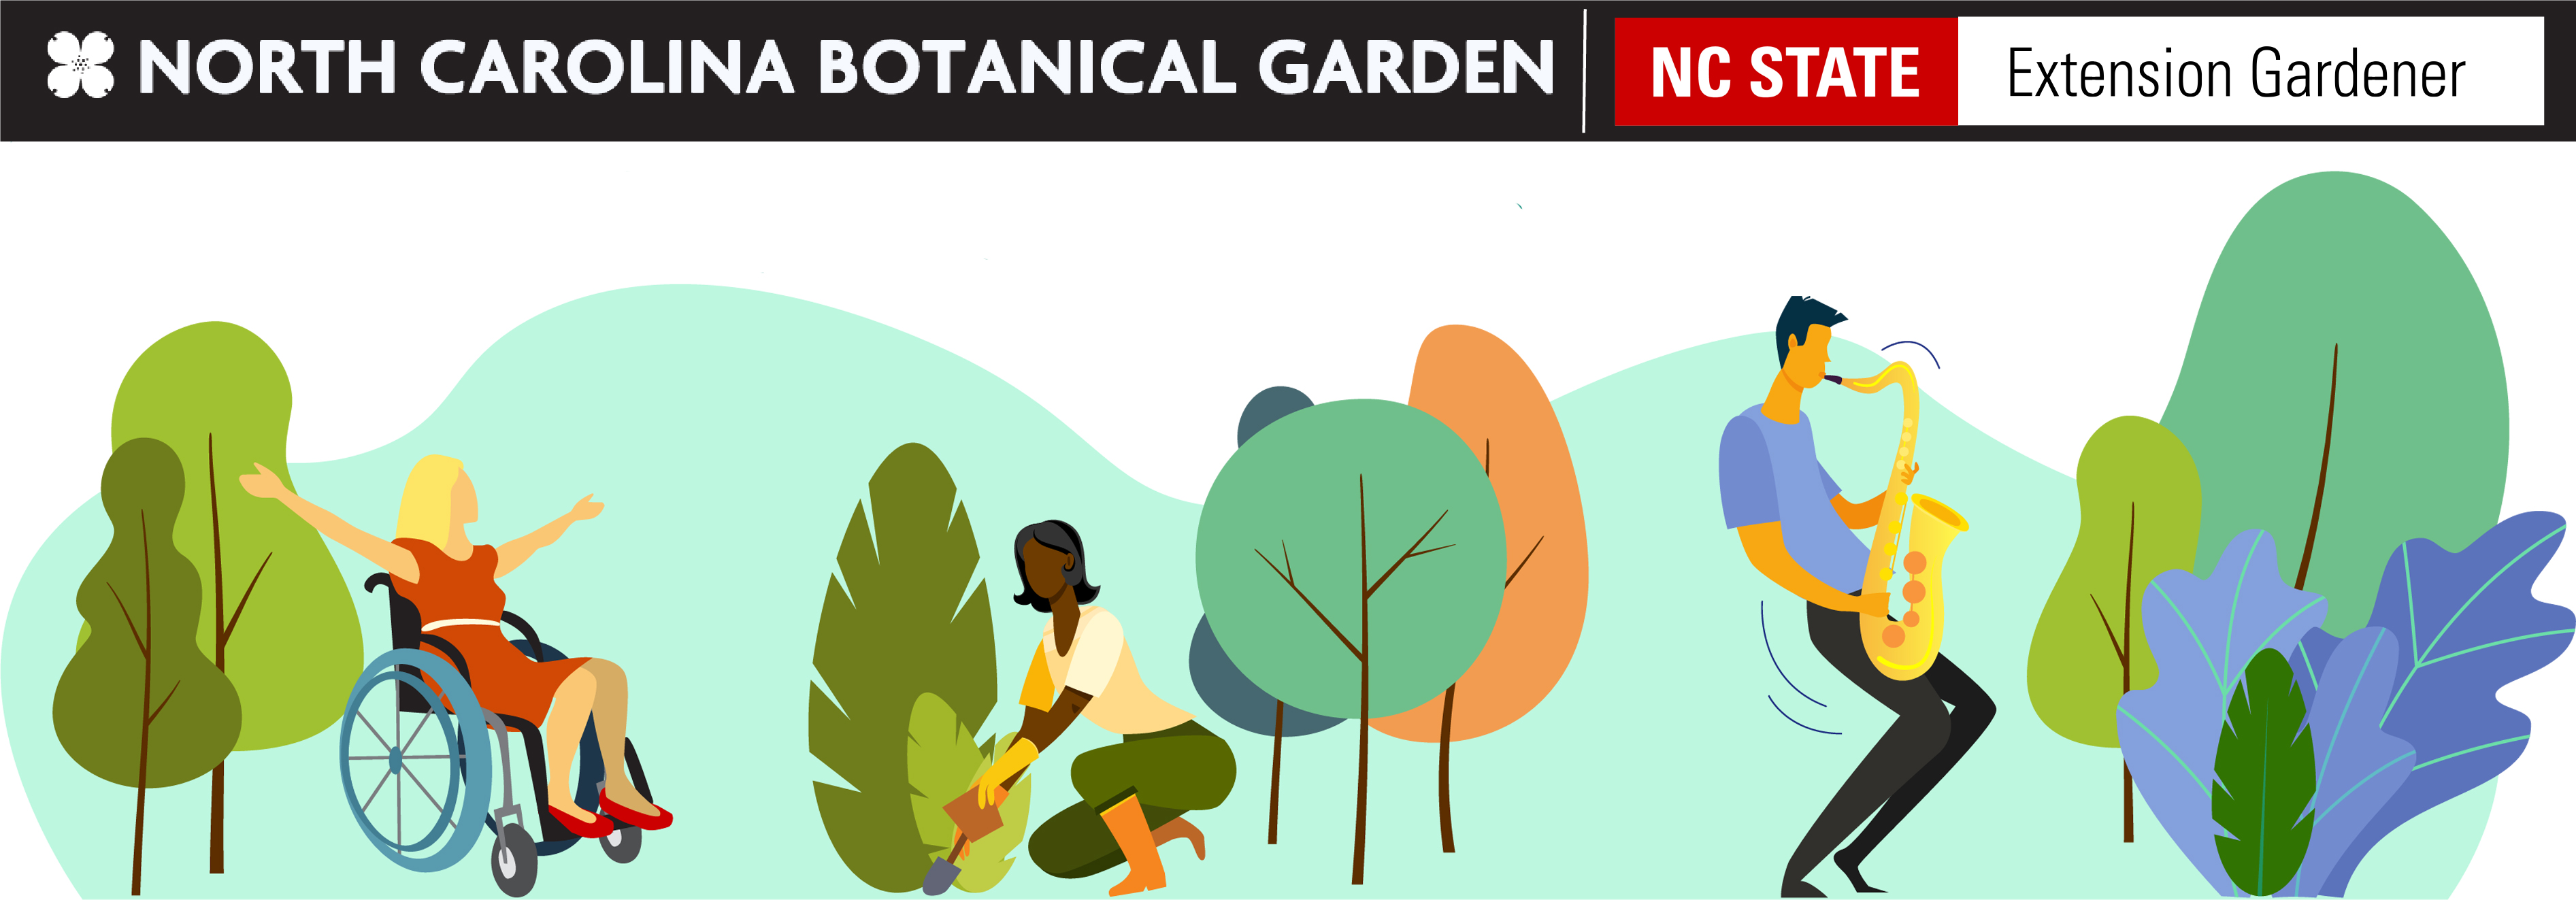 North Carolina Botanical Garden logo with illustrations of people enjoying nature.